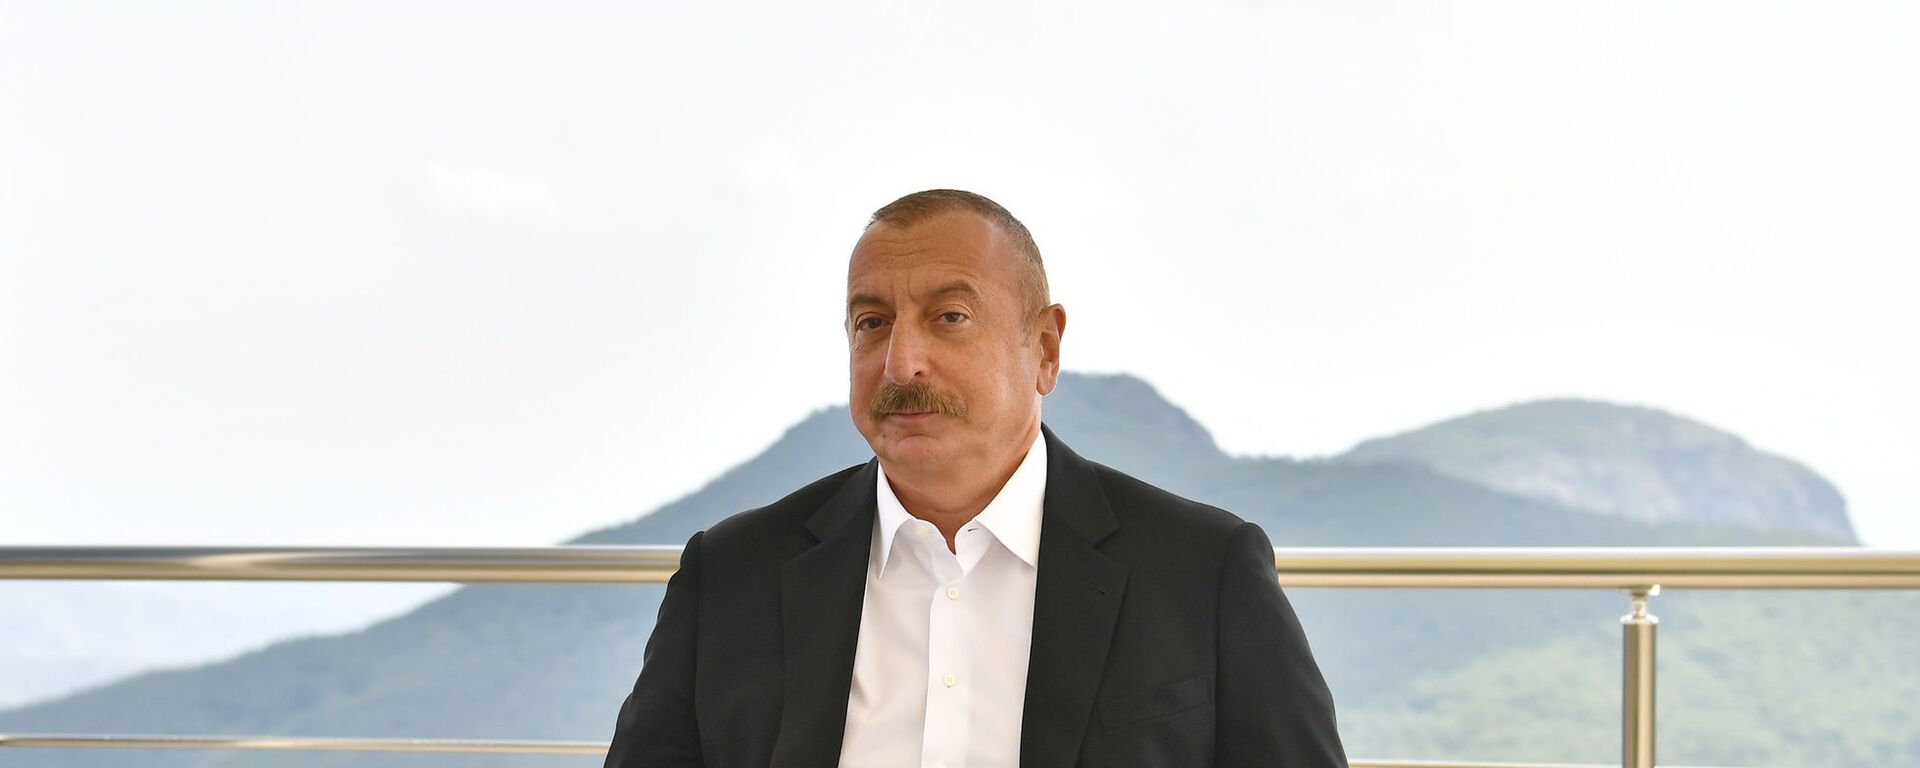 Президент Ильхам Алиев ознакомился на территории комплекса «Човдар» ЗАО AzerGold, Дашкесане. 22 июля 2021 года - Sputnik Azərbaycan, 1920, 24.09.2021